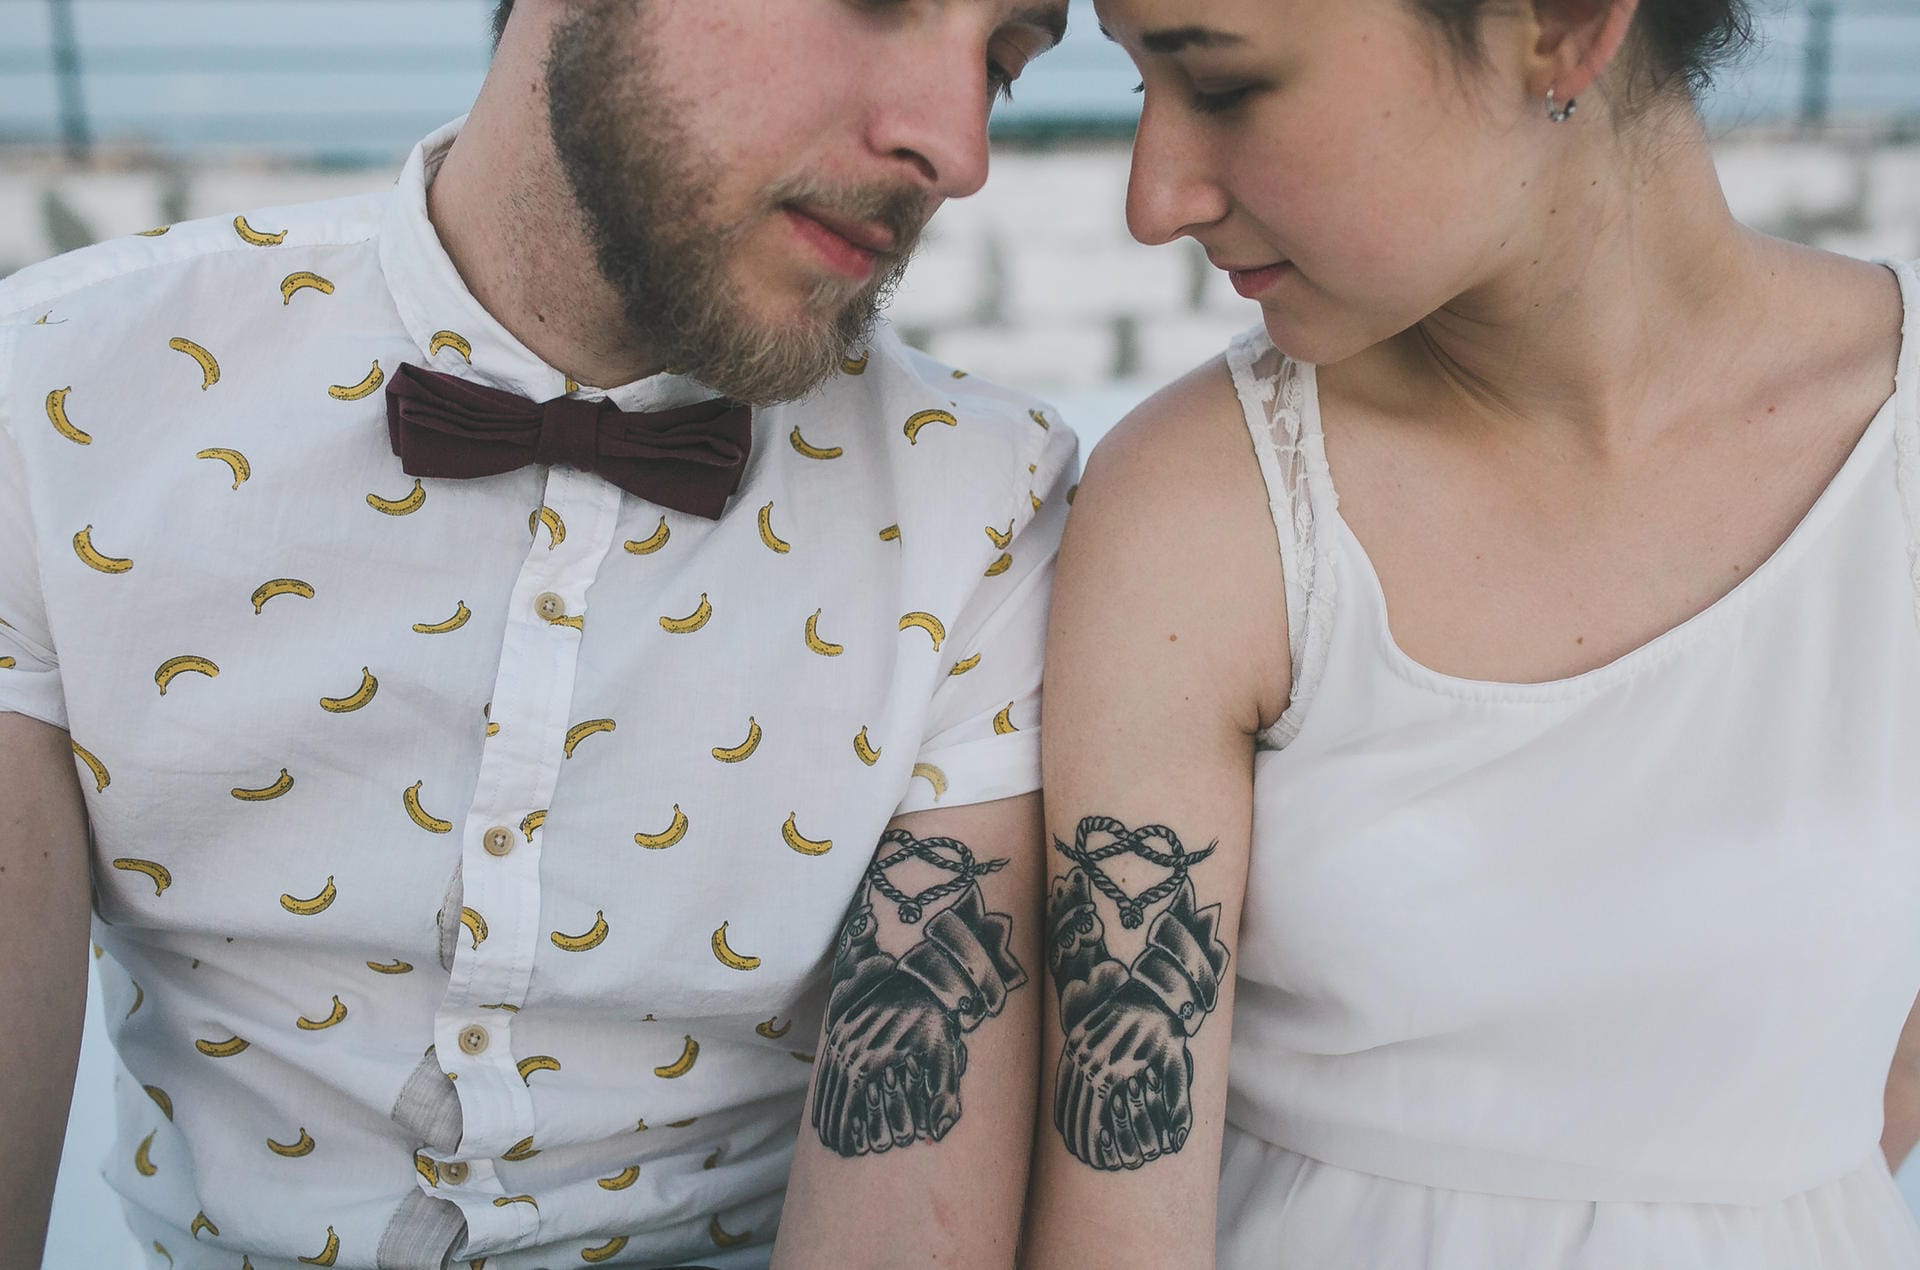 Mutiger Liebesbeweis: Ein Partner-Tattoo verbindet für immer, in guten wie in schlechten Zeiten. Tattoo-begeisterte Frauen schmelzen dahin.